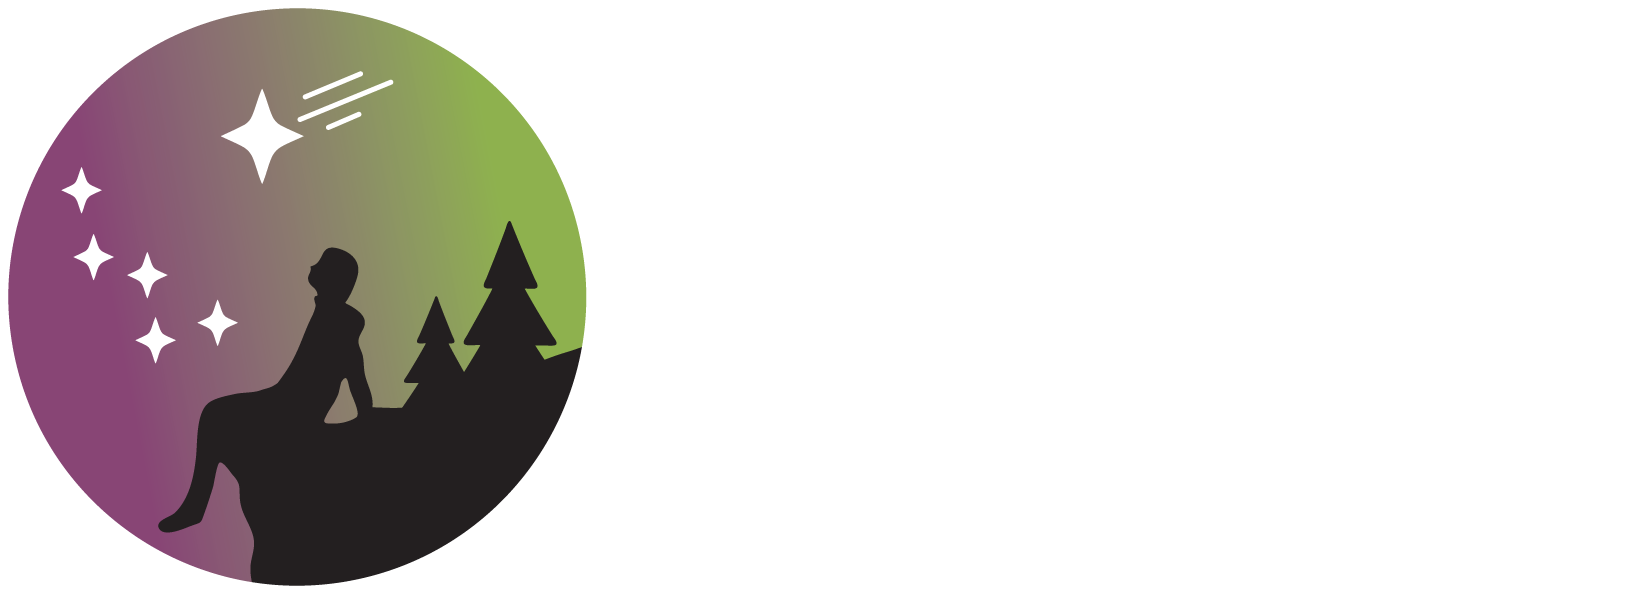 Tomintoul & Glenlivet Cairngorms Dark Sky Park logo